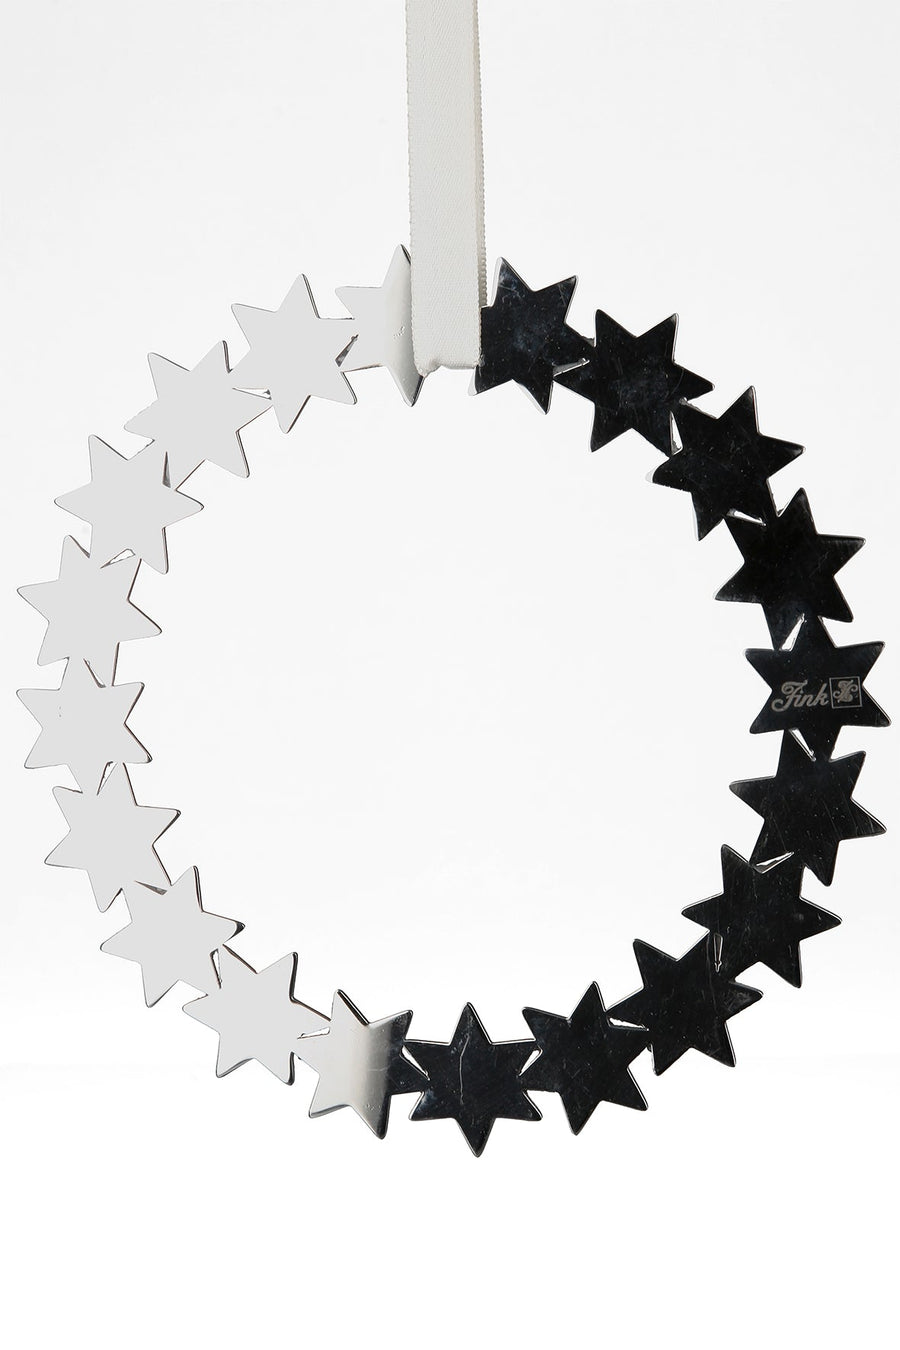 FINk 'Dekoration Kranz, Sterne aus Edelstahl D20cm'-FINK-151125